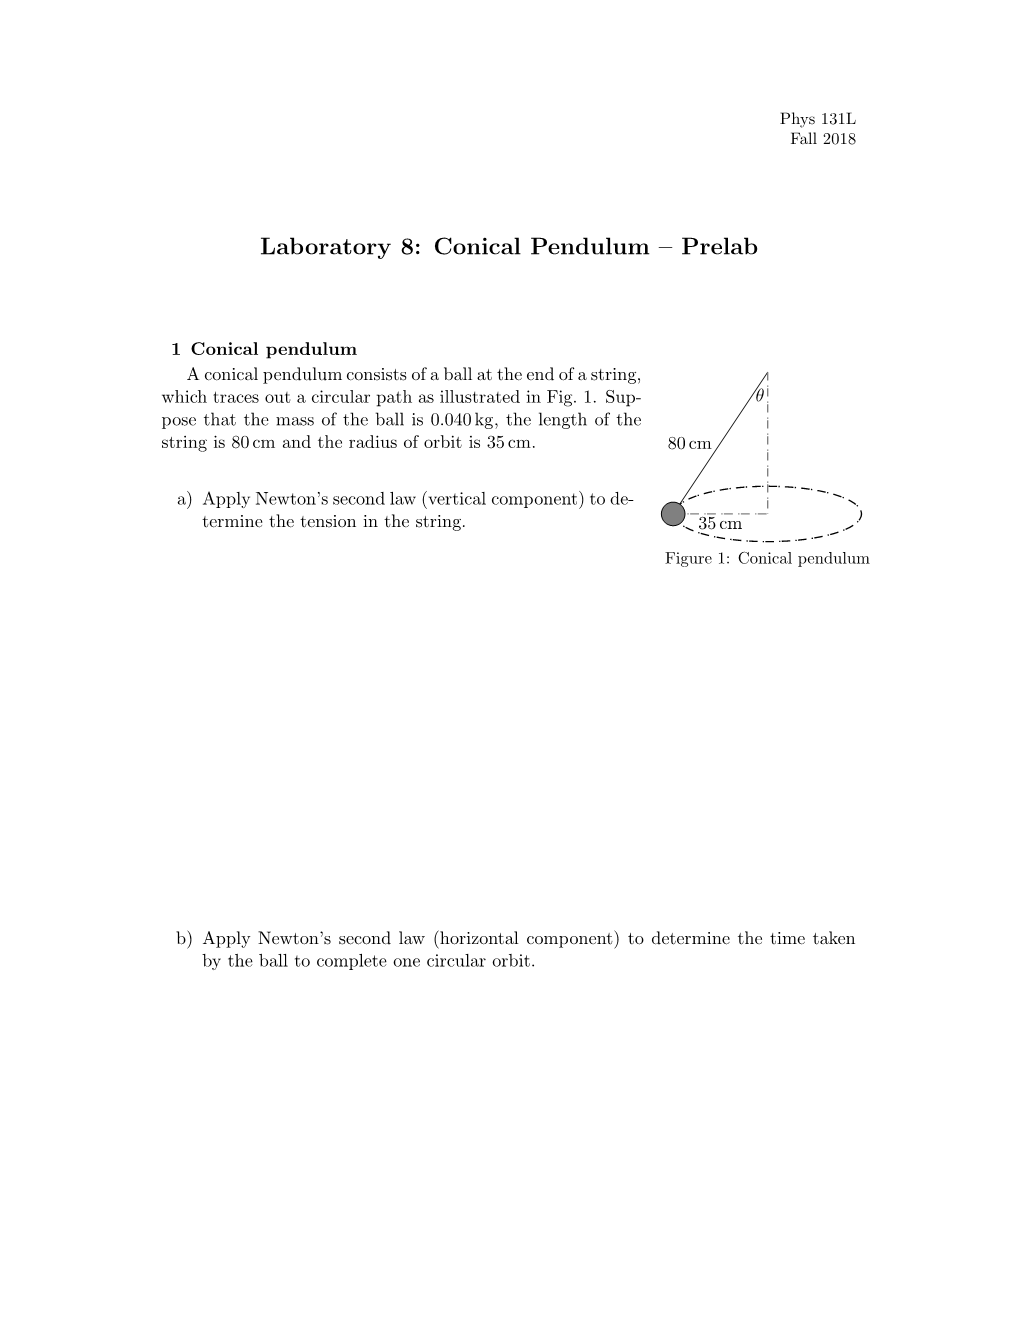 Conical Pendulum – Prelab